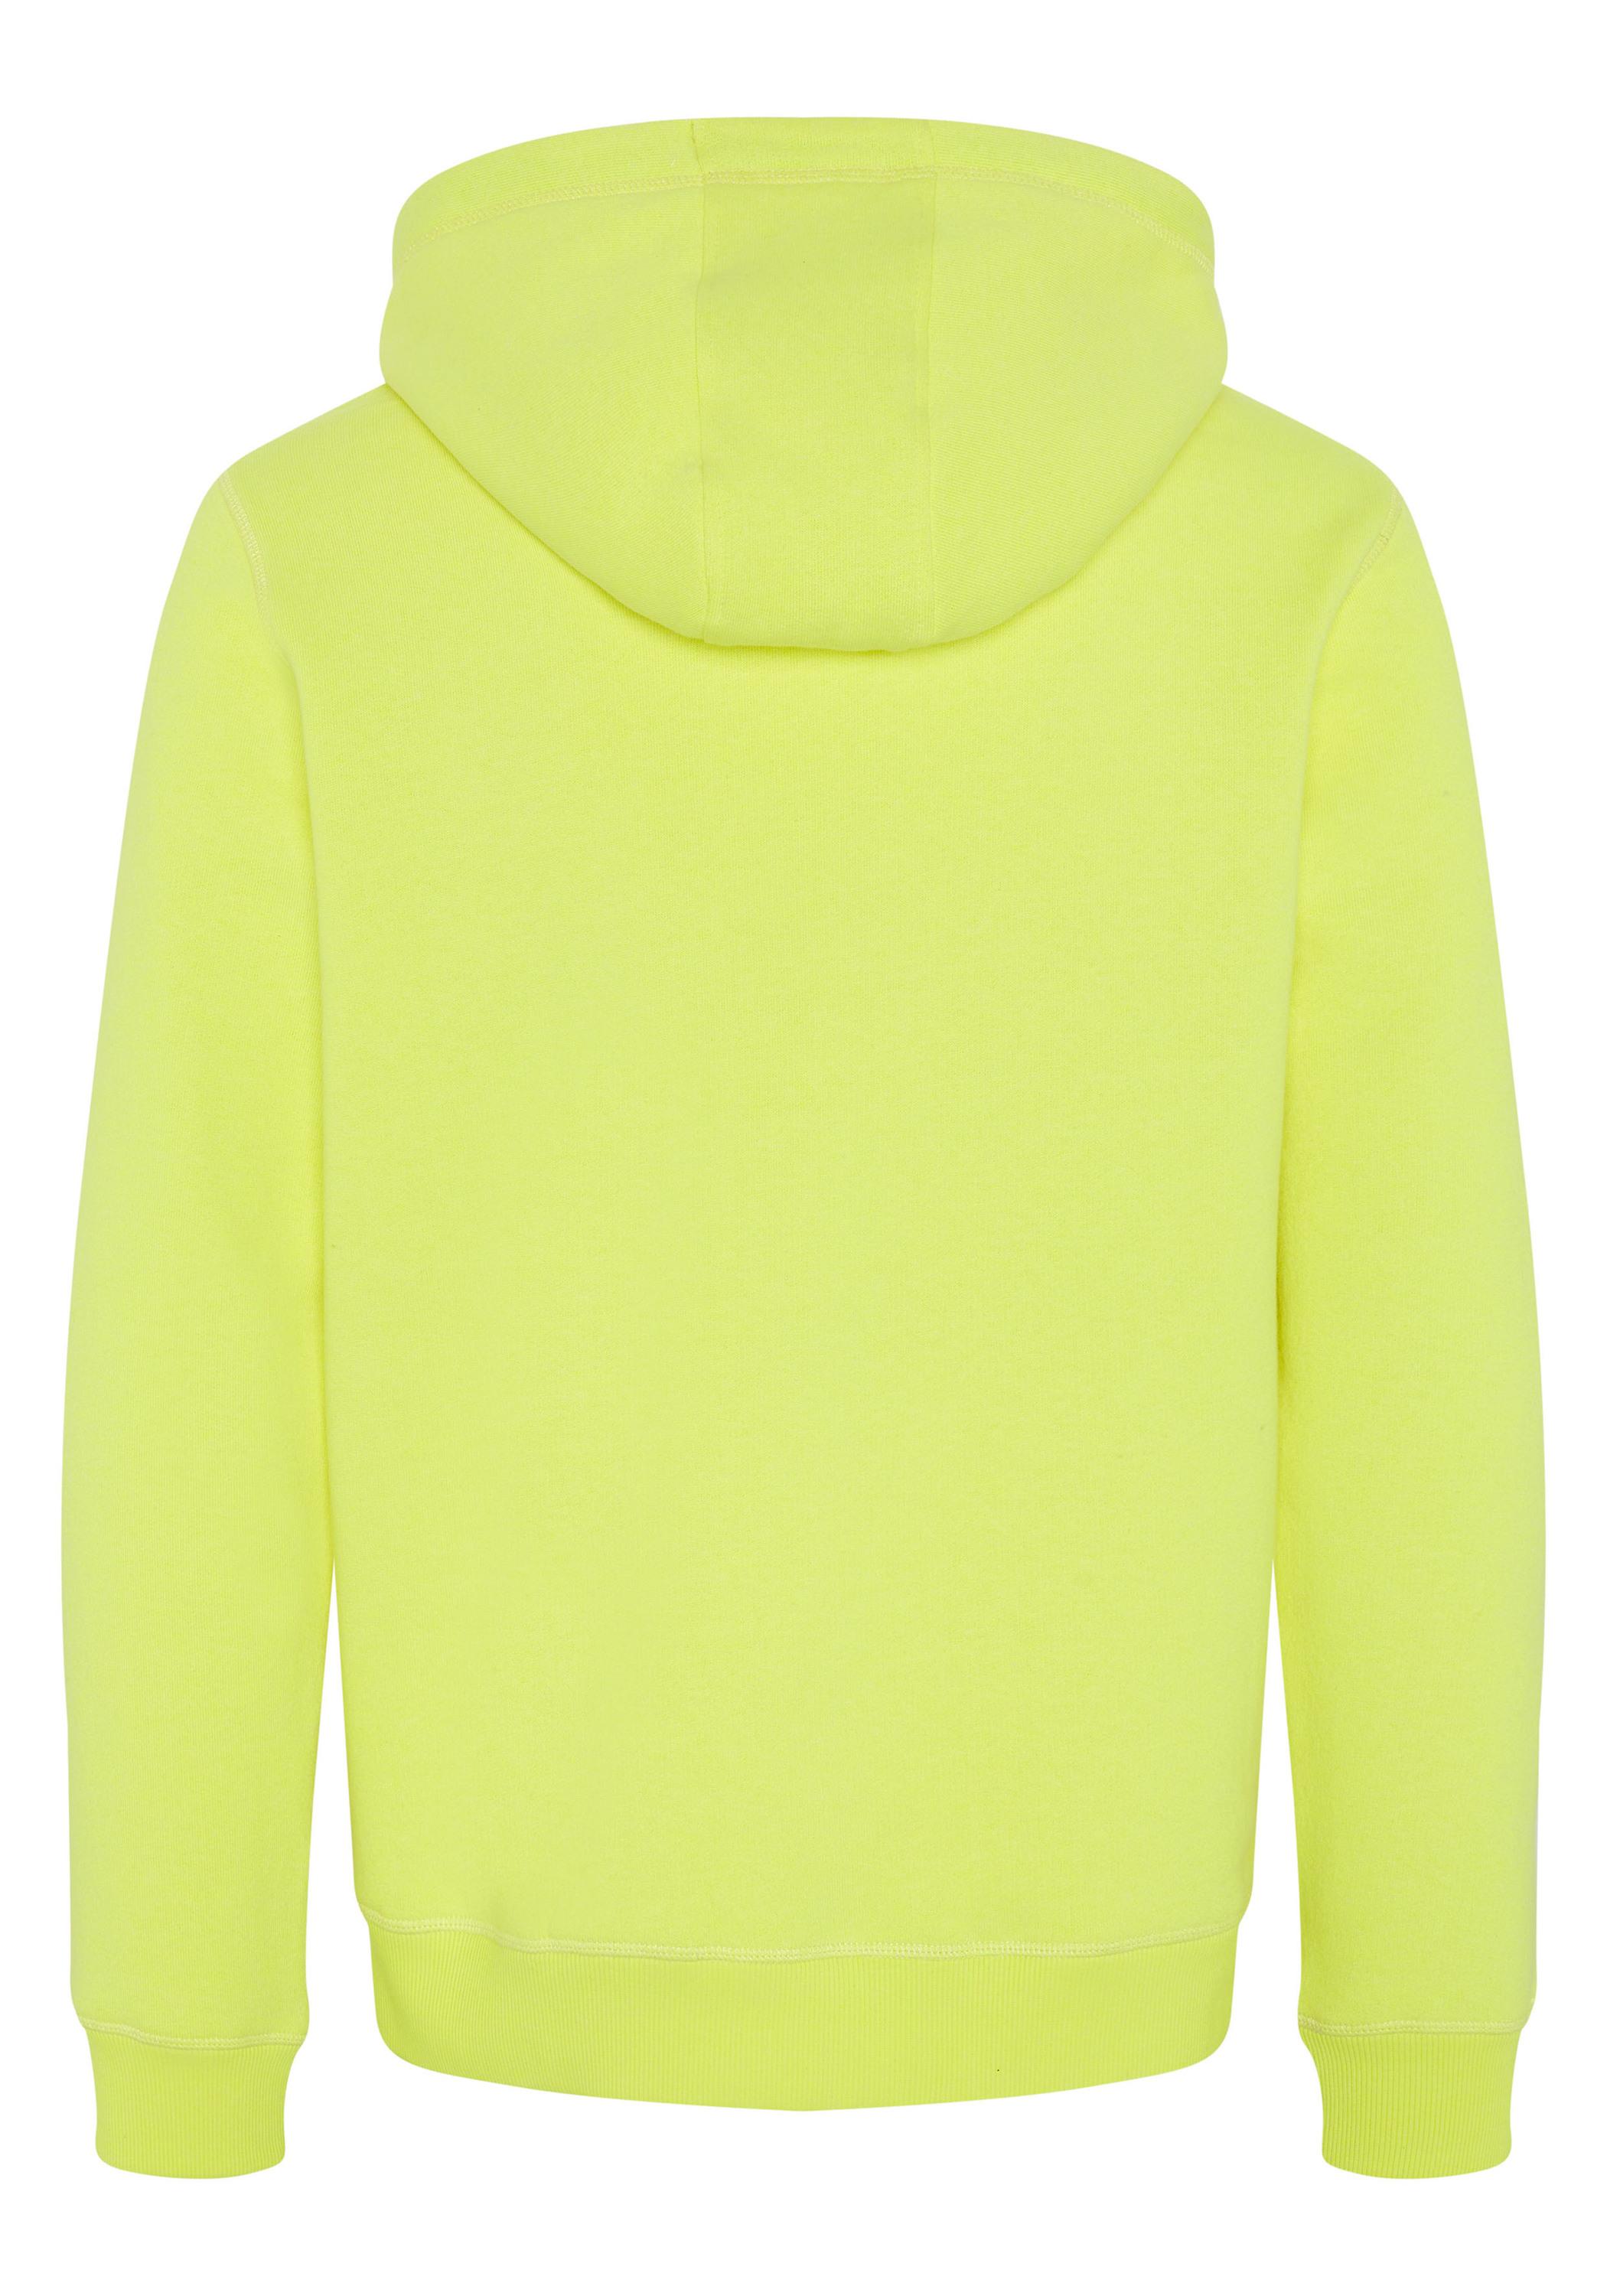 kaufen im Yellow Sweatshirt Herren Shop SportScheck Kapuzensweatshirt Safety Online von Chiemsee